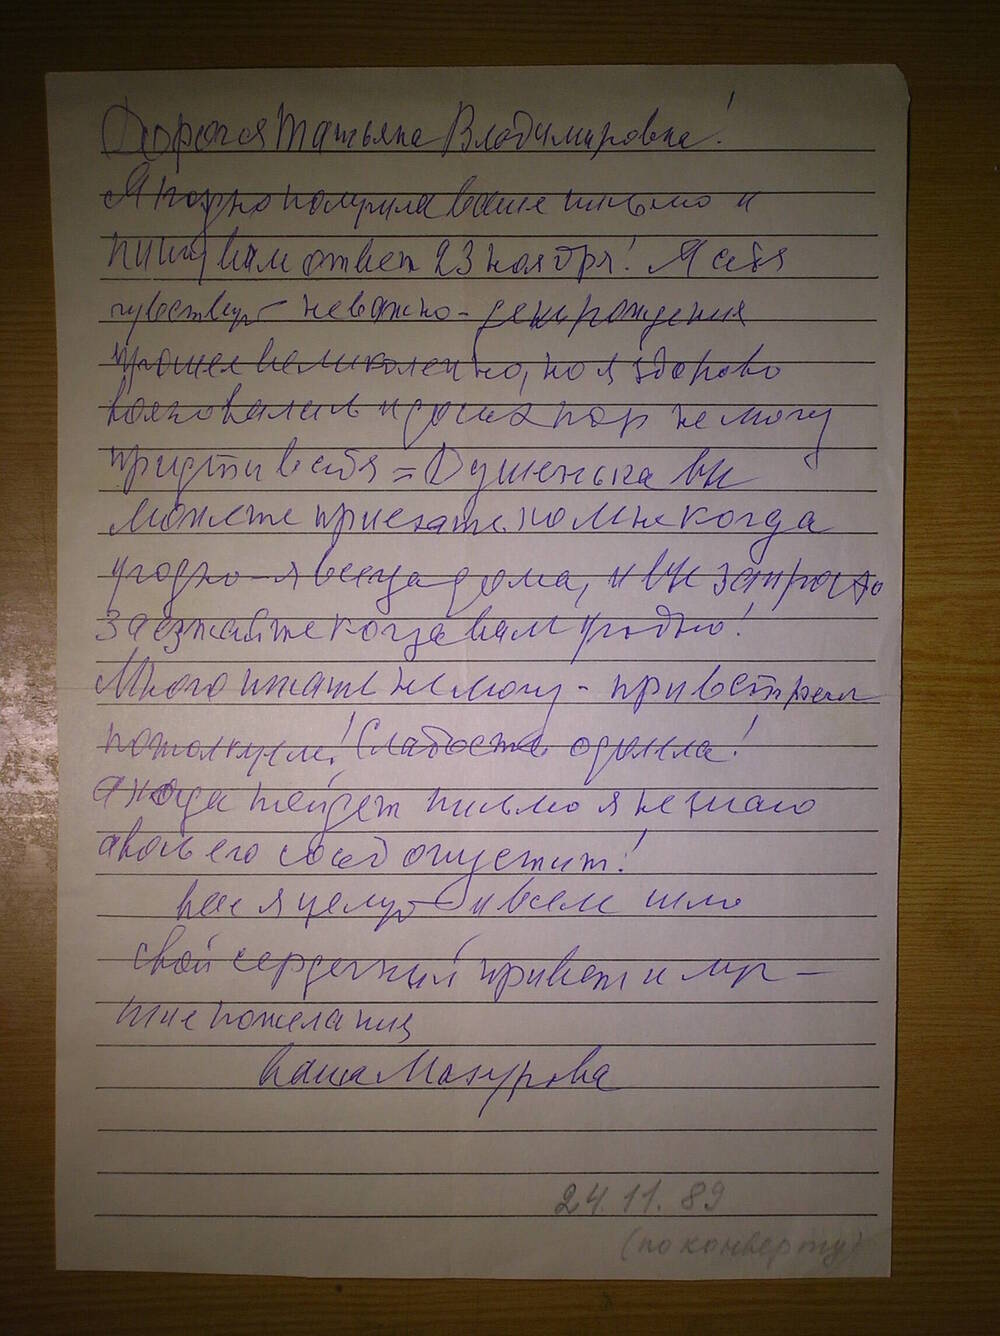 Письмо от Мазуровой Е.Я. Пивовой Т.В. личного характера. Г. Москва.